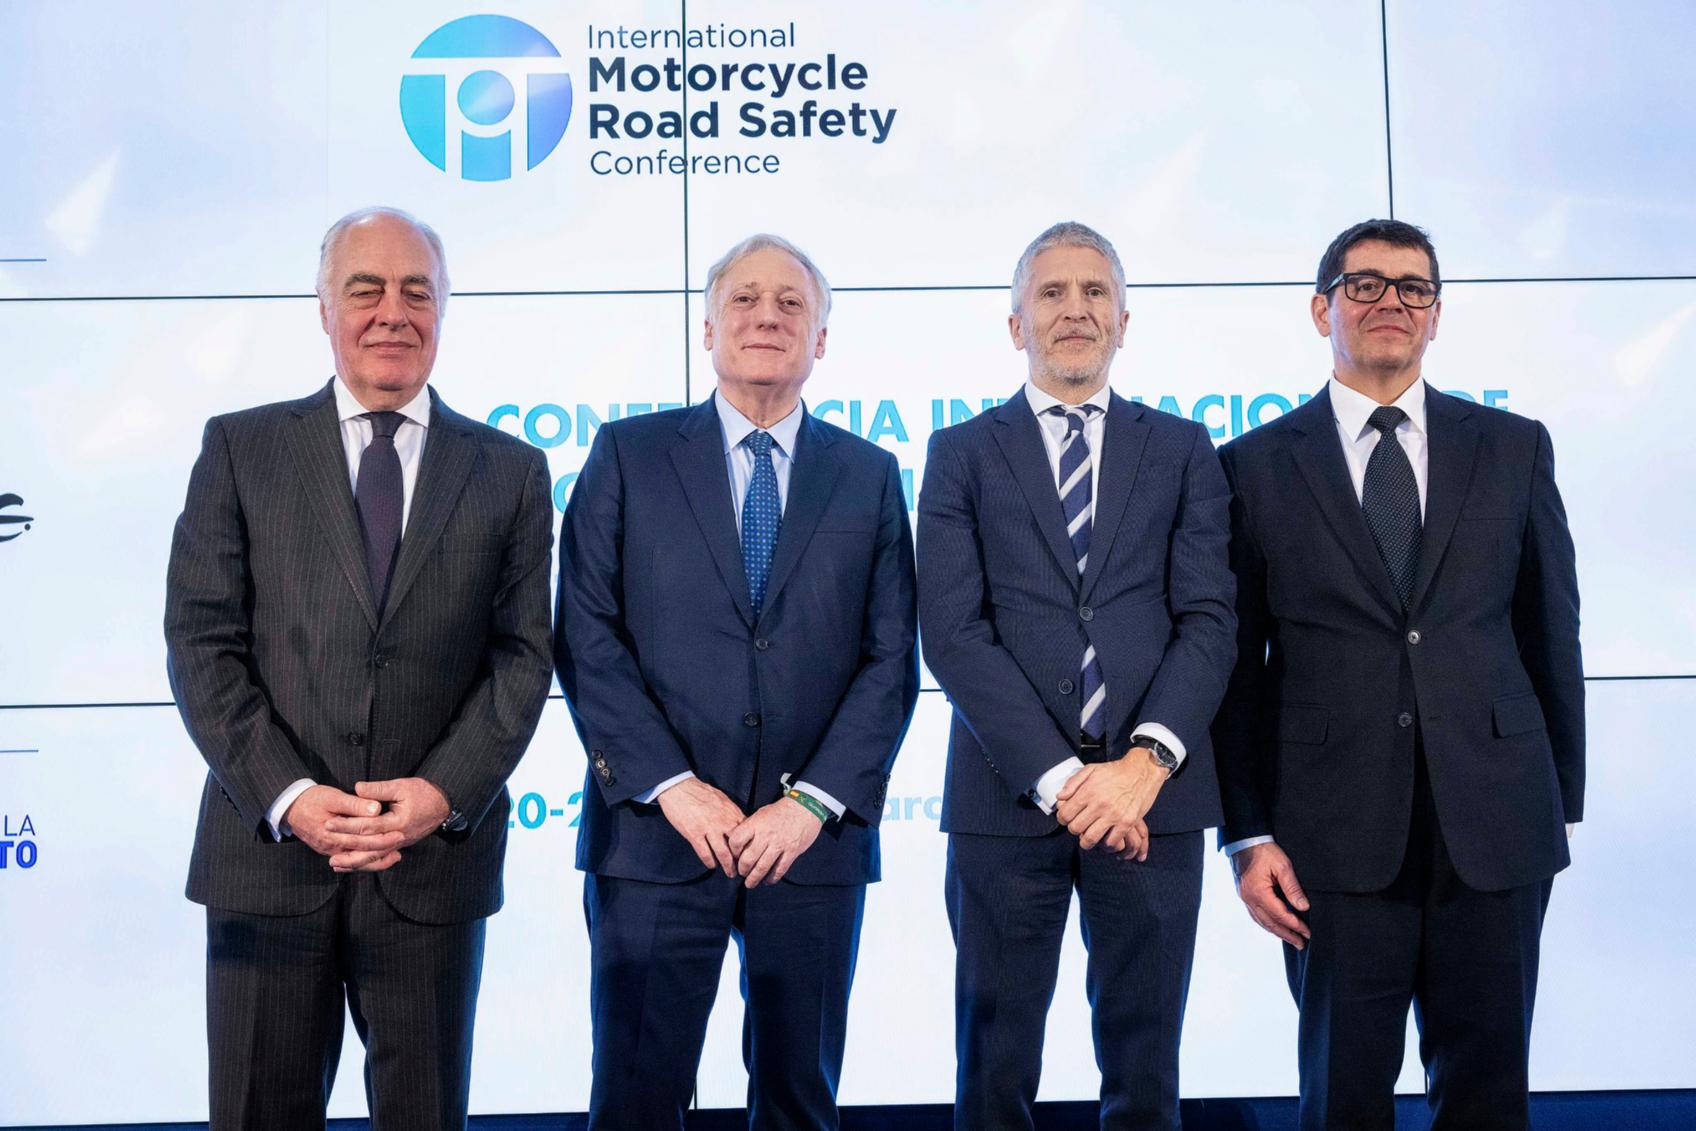 Grande-Marlaska clausura la primera Conferencia Internacional de Seguridad Vial de la Moto